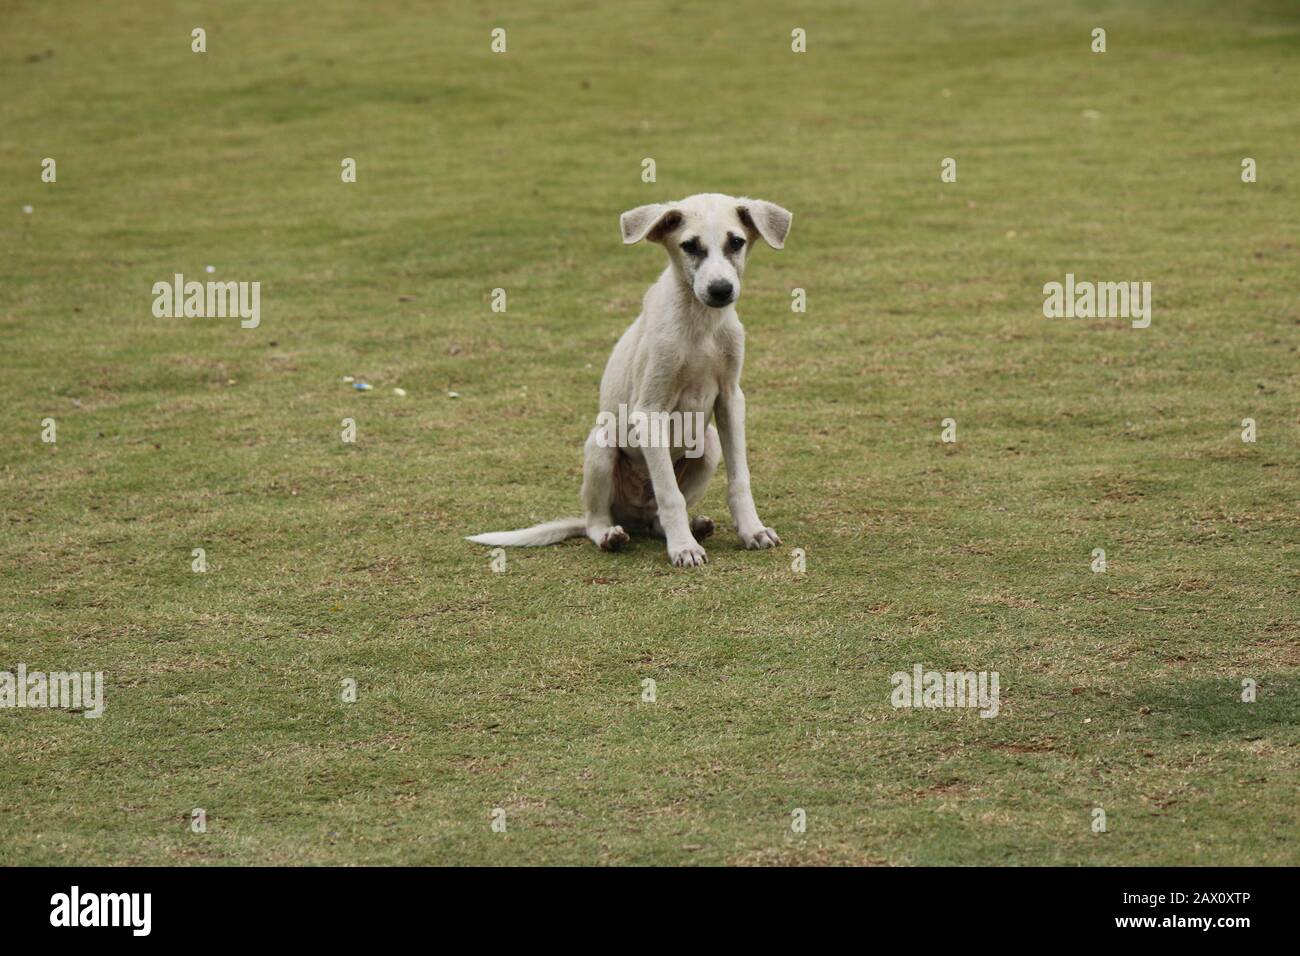 Hund, der mit Traurigkeit im Park steht, Traurigkeit der Tiere kann der Mensch nicht verstehen Stockfoto